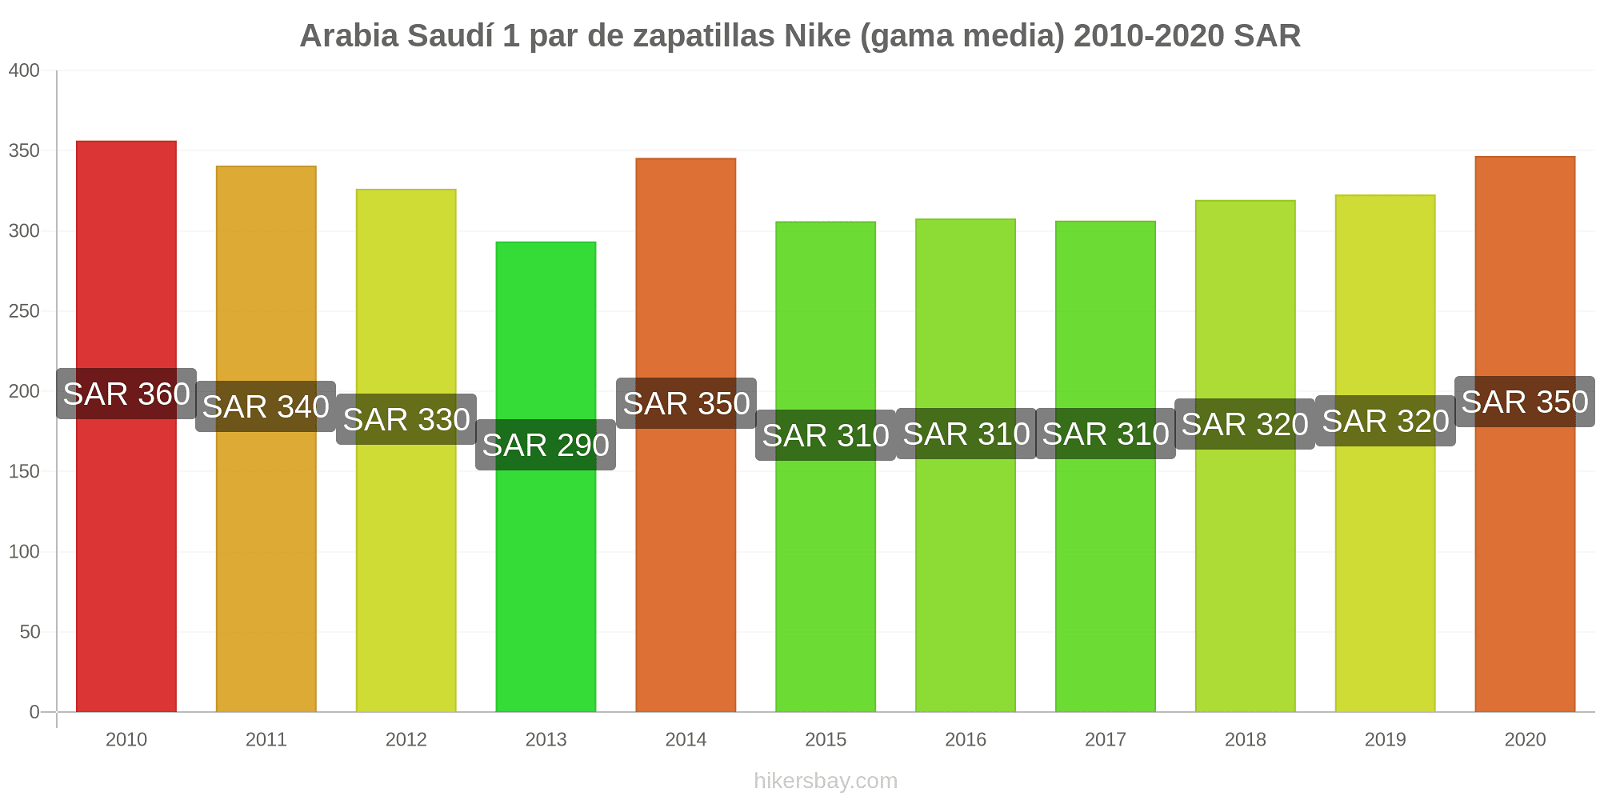 Arabia Saudí cambios de precios 1 par de zapatillas Nike (gama media) hikersbay.com